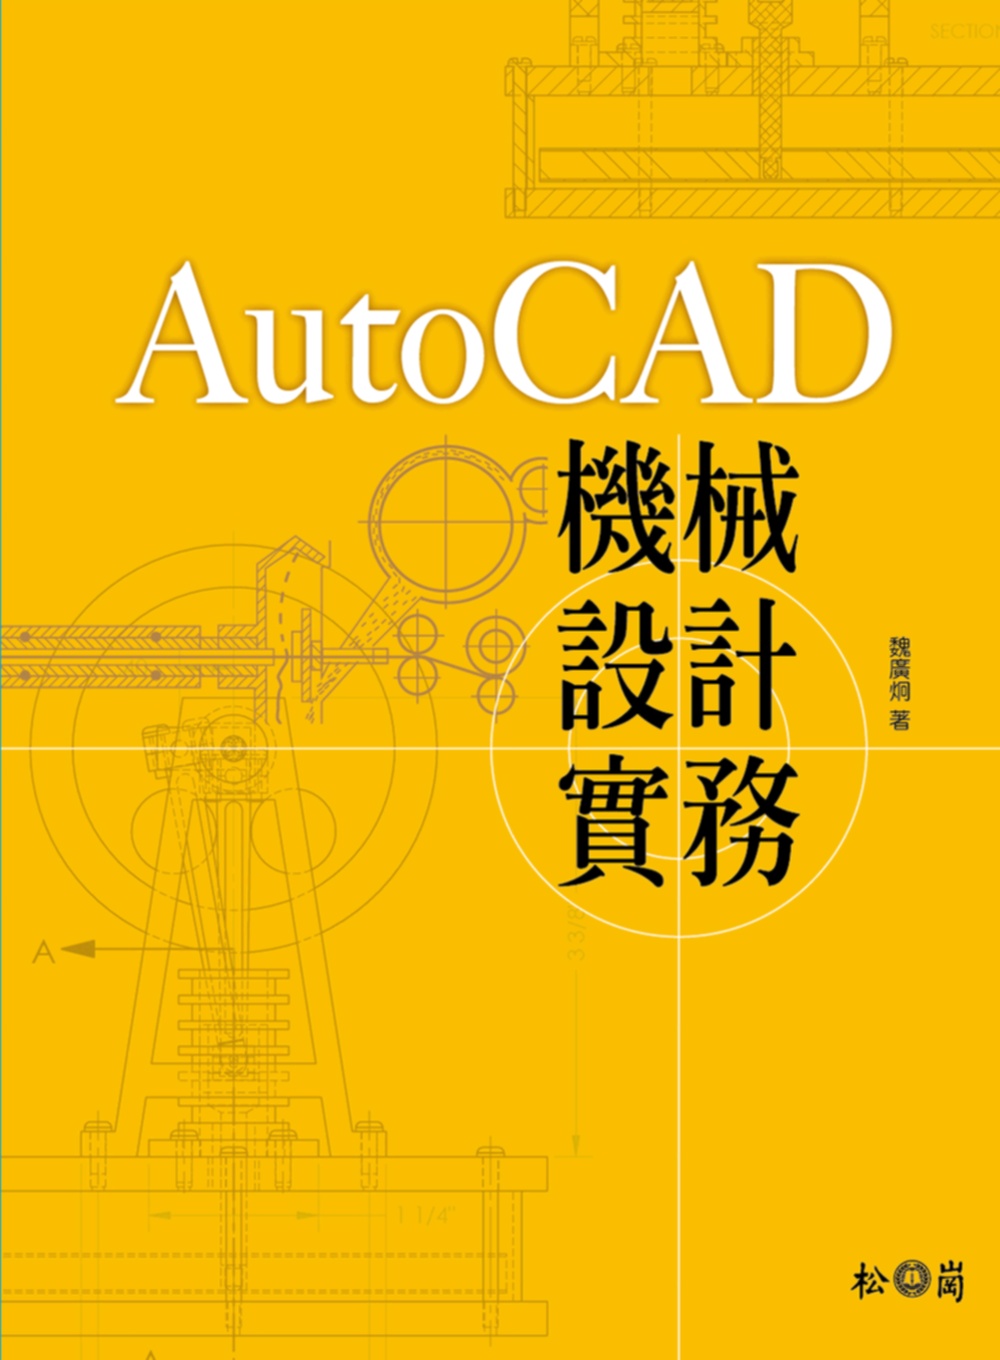 AutoCAD機械設計實務